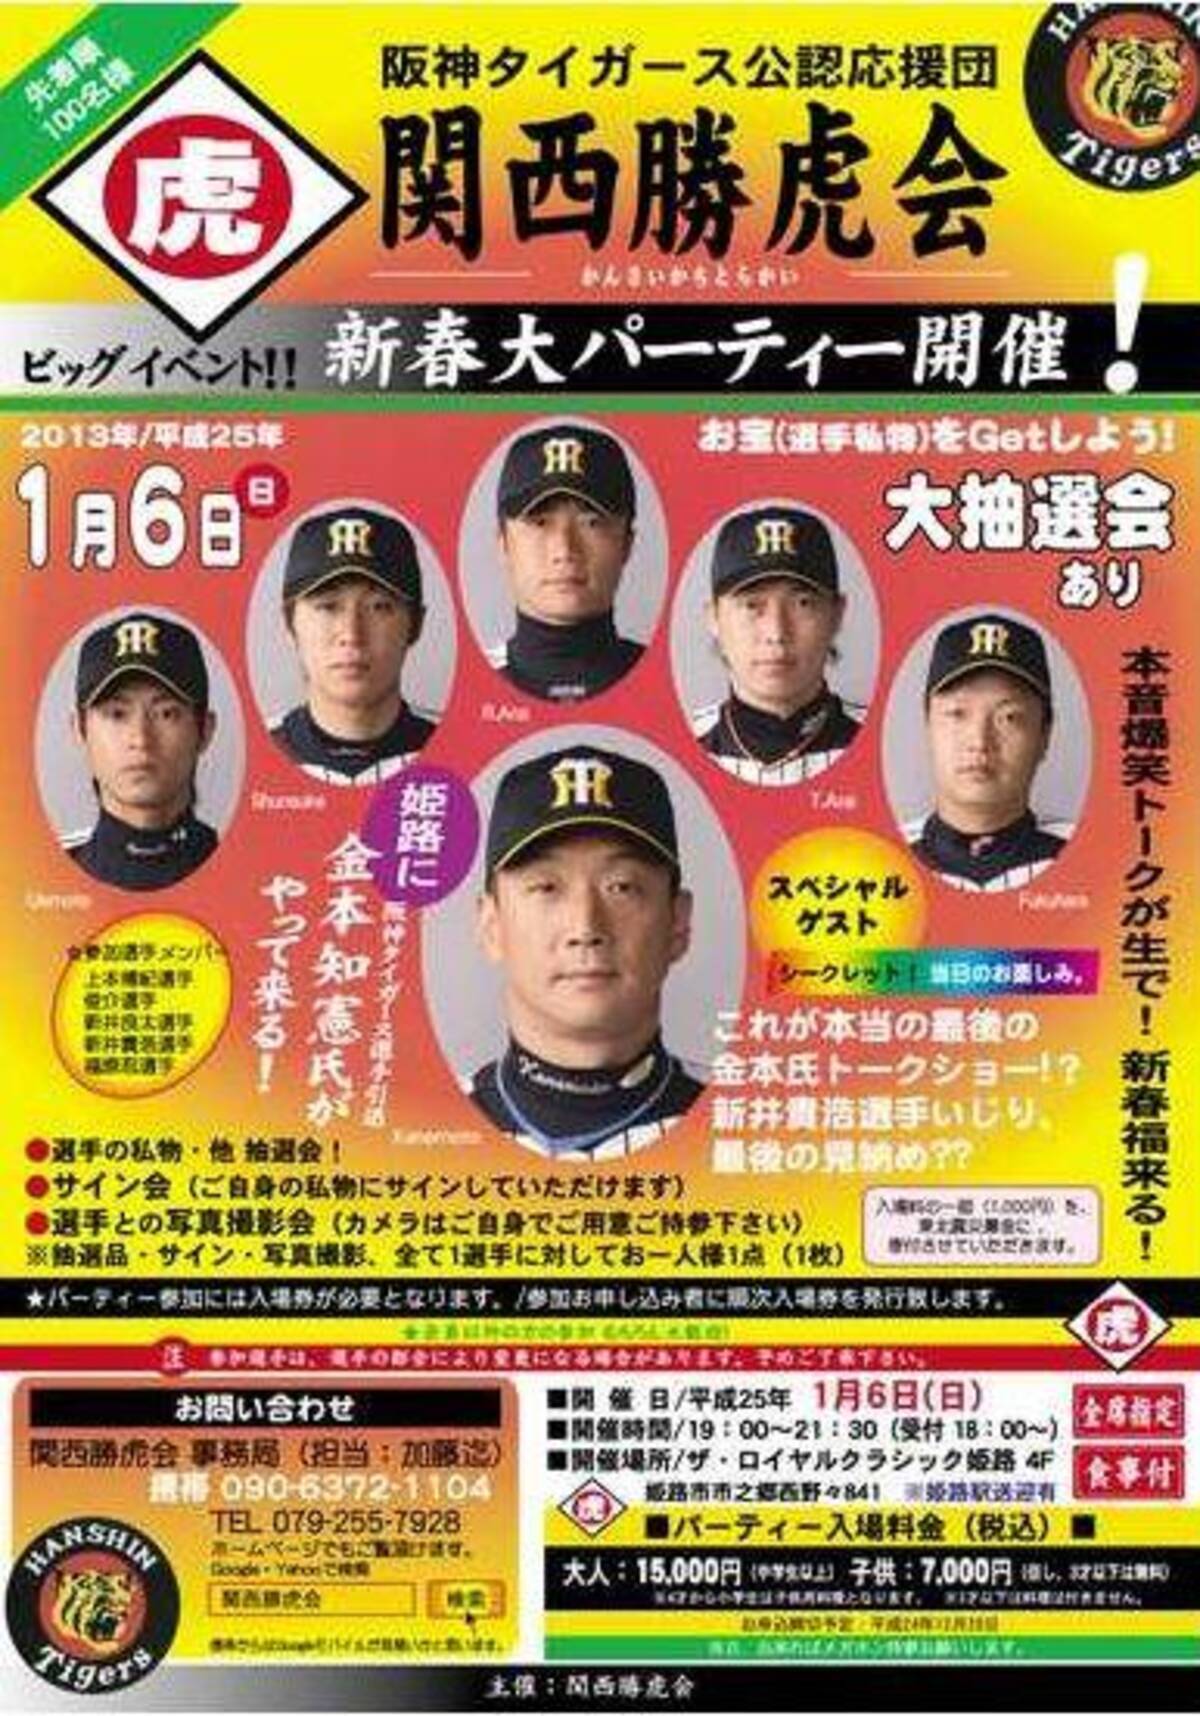 金本アニキがガチギレ 阪神応援団が無断でパーティを開催 12年12月14日 エキサイトニュース